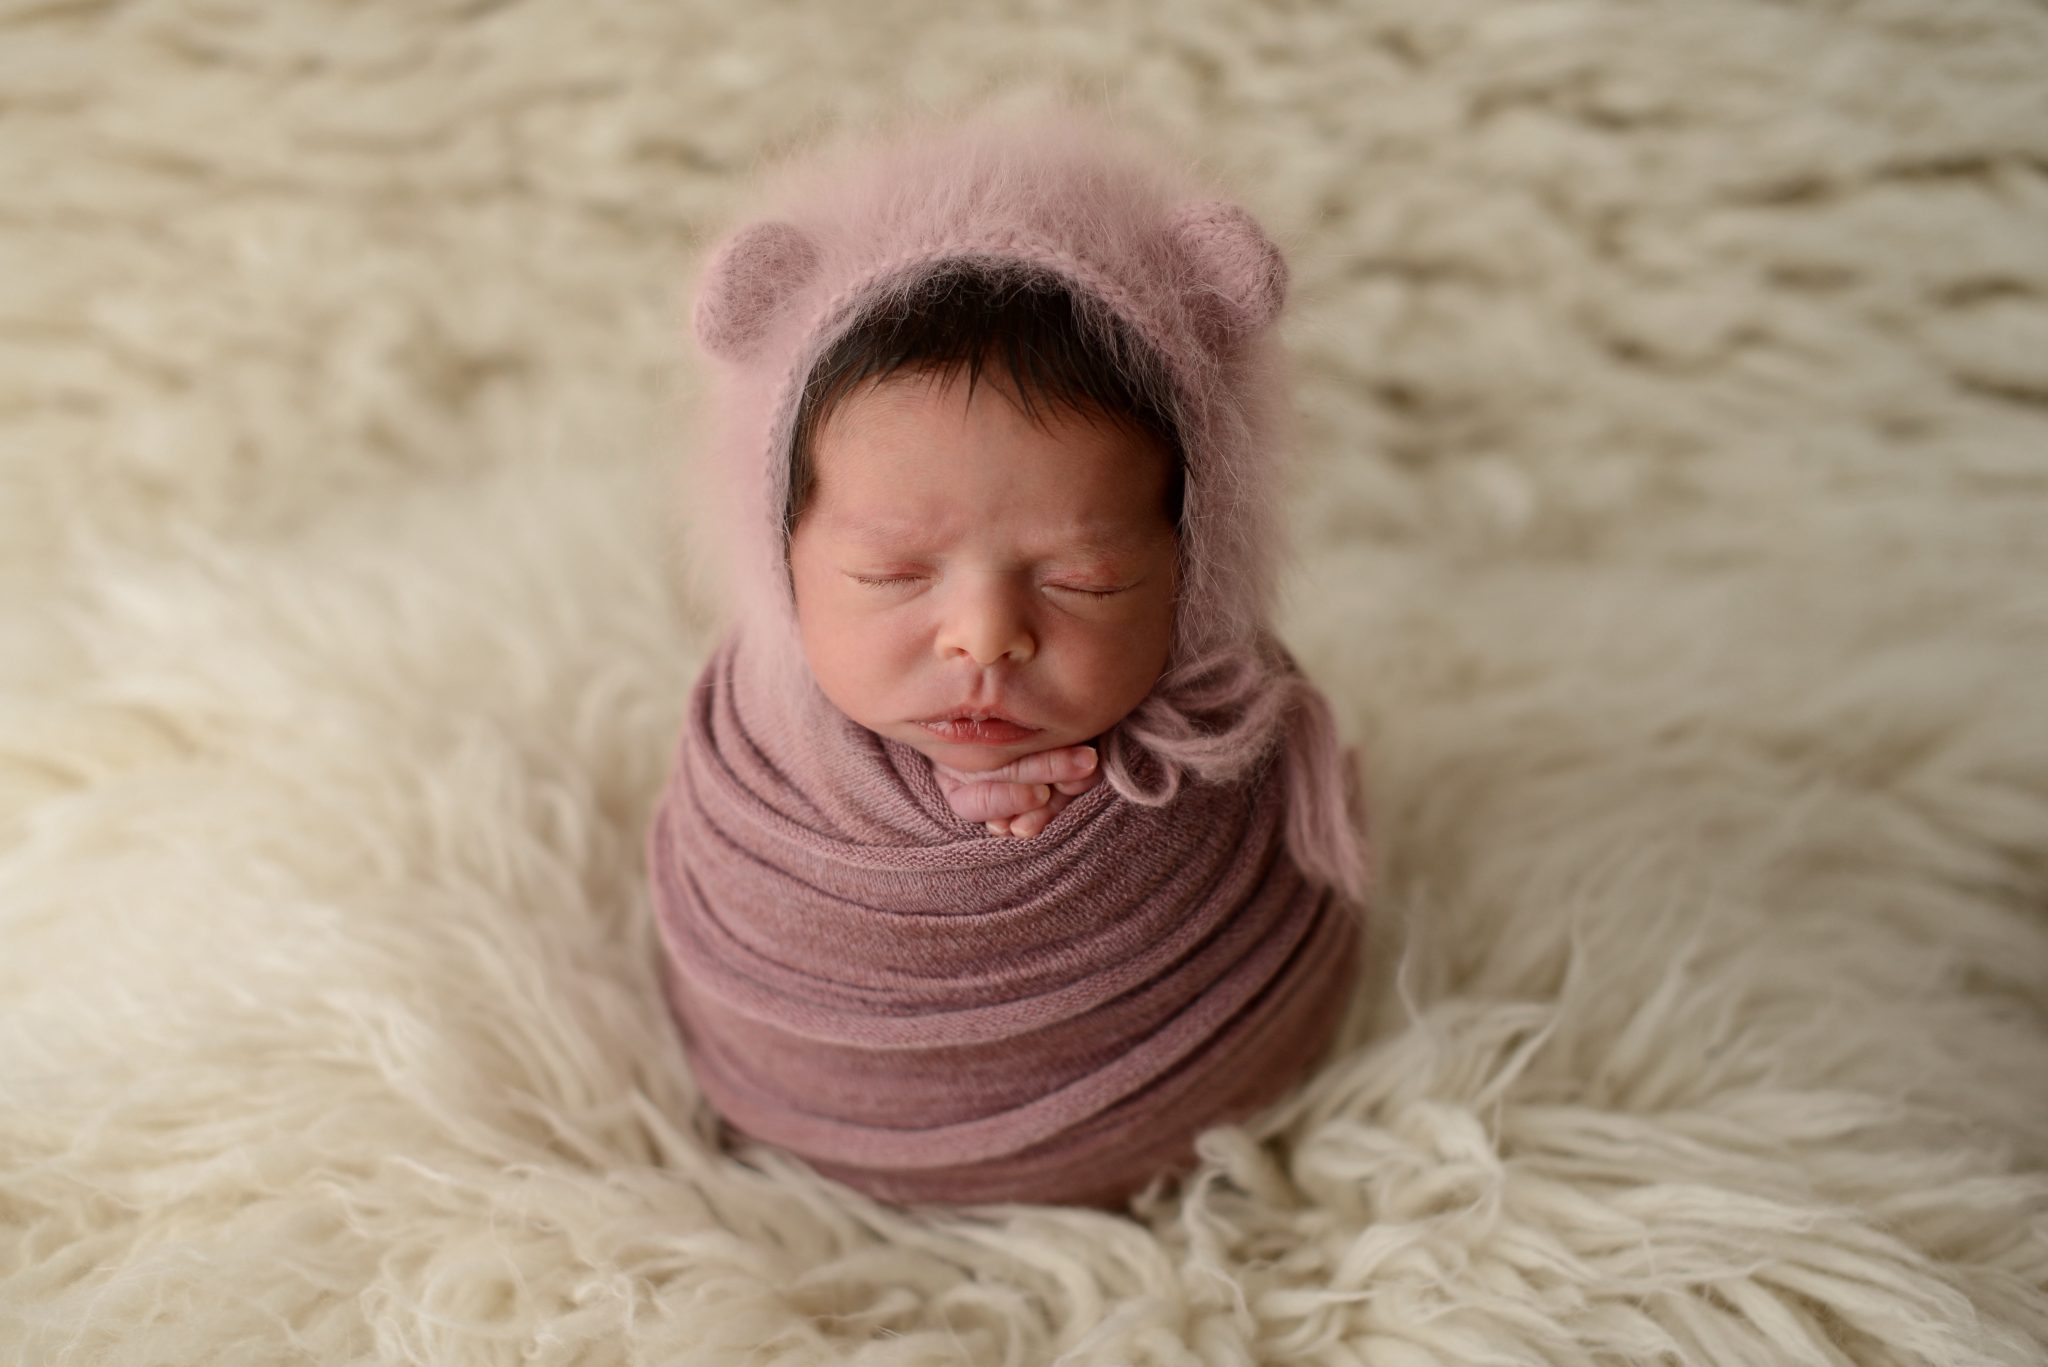 Queens newborn studio portrait of baby girl on cream backdrop